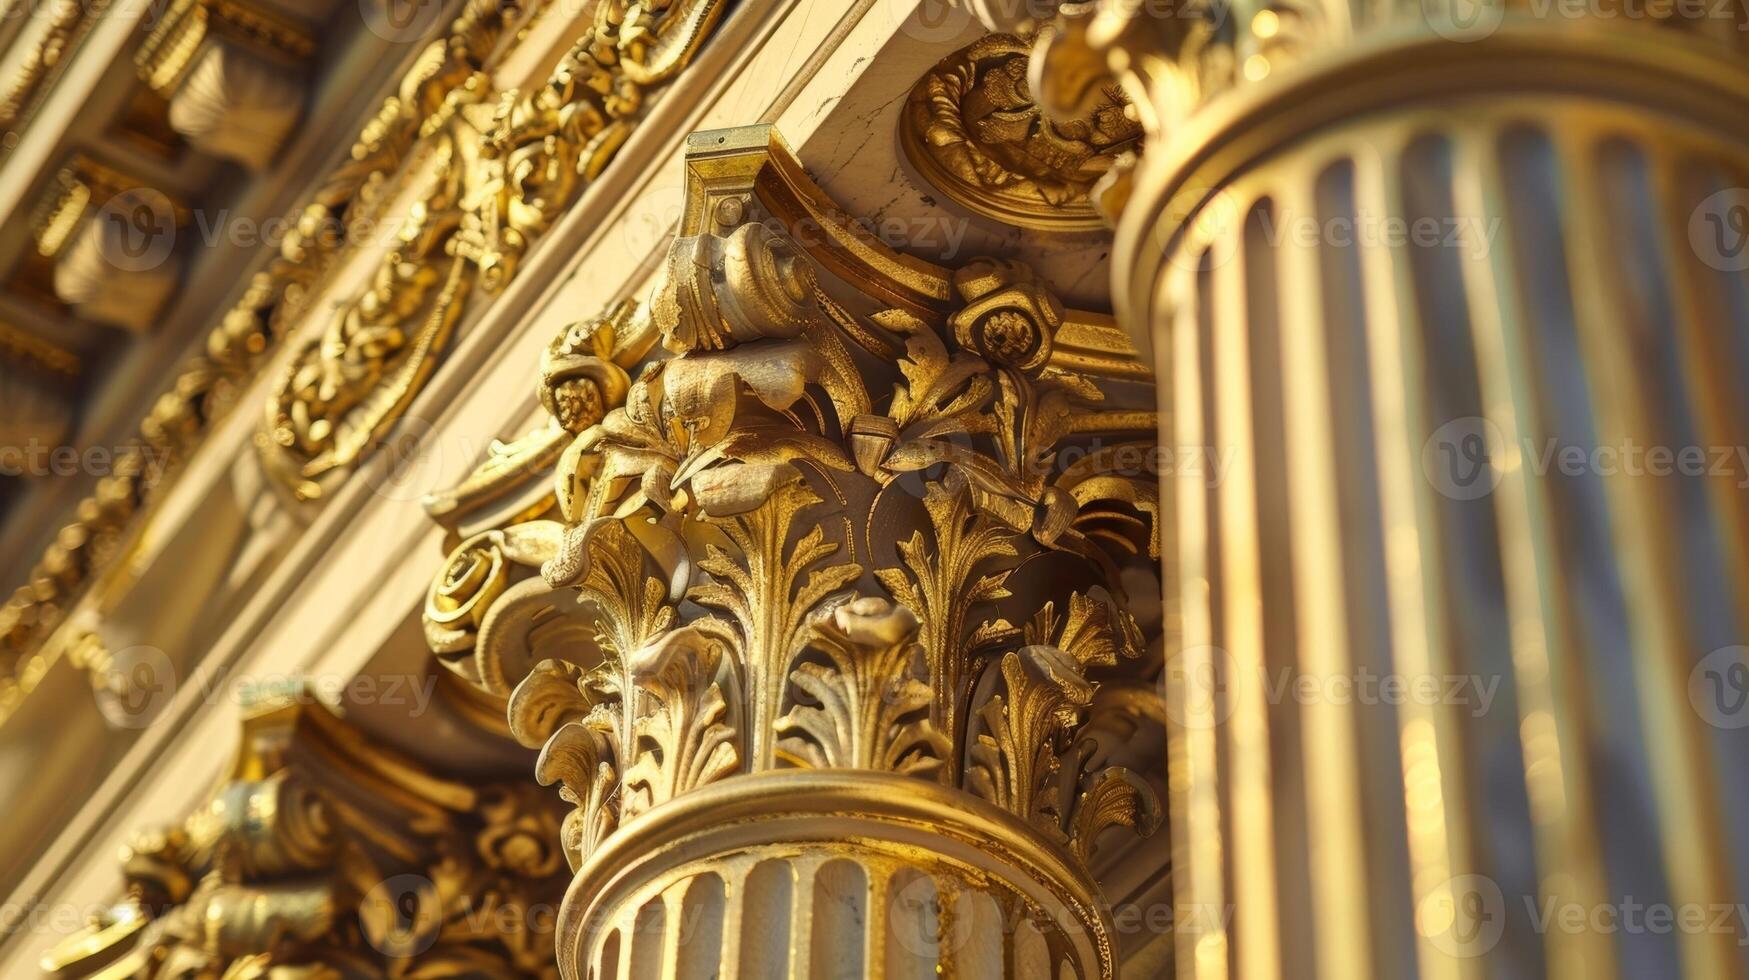 använder sig av lämplig period tekniker arbetare är försiktigt applicering ny skikten av guld blad till utsmyckad kolonner av en historisk grekisk väckelse byggnad foto